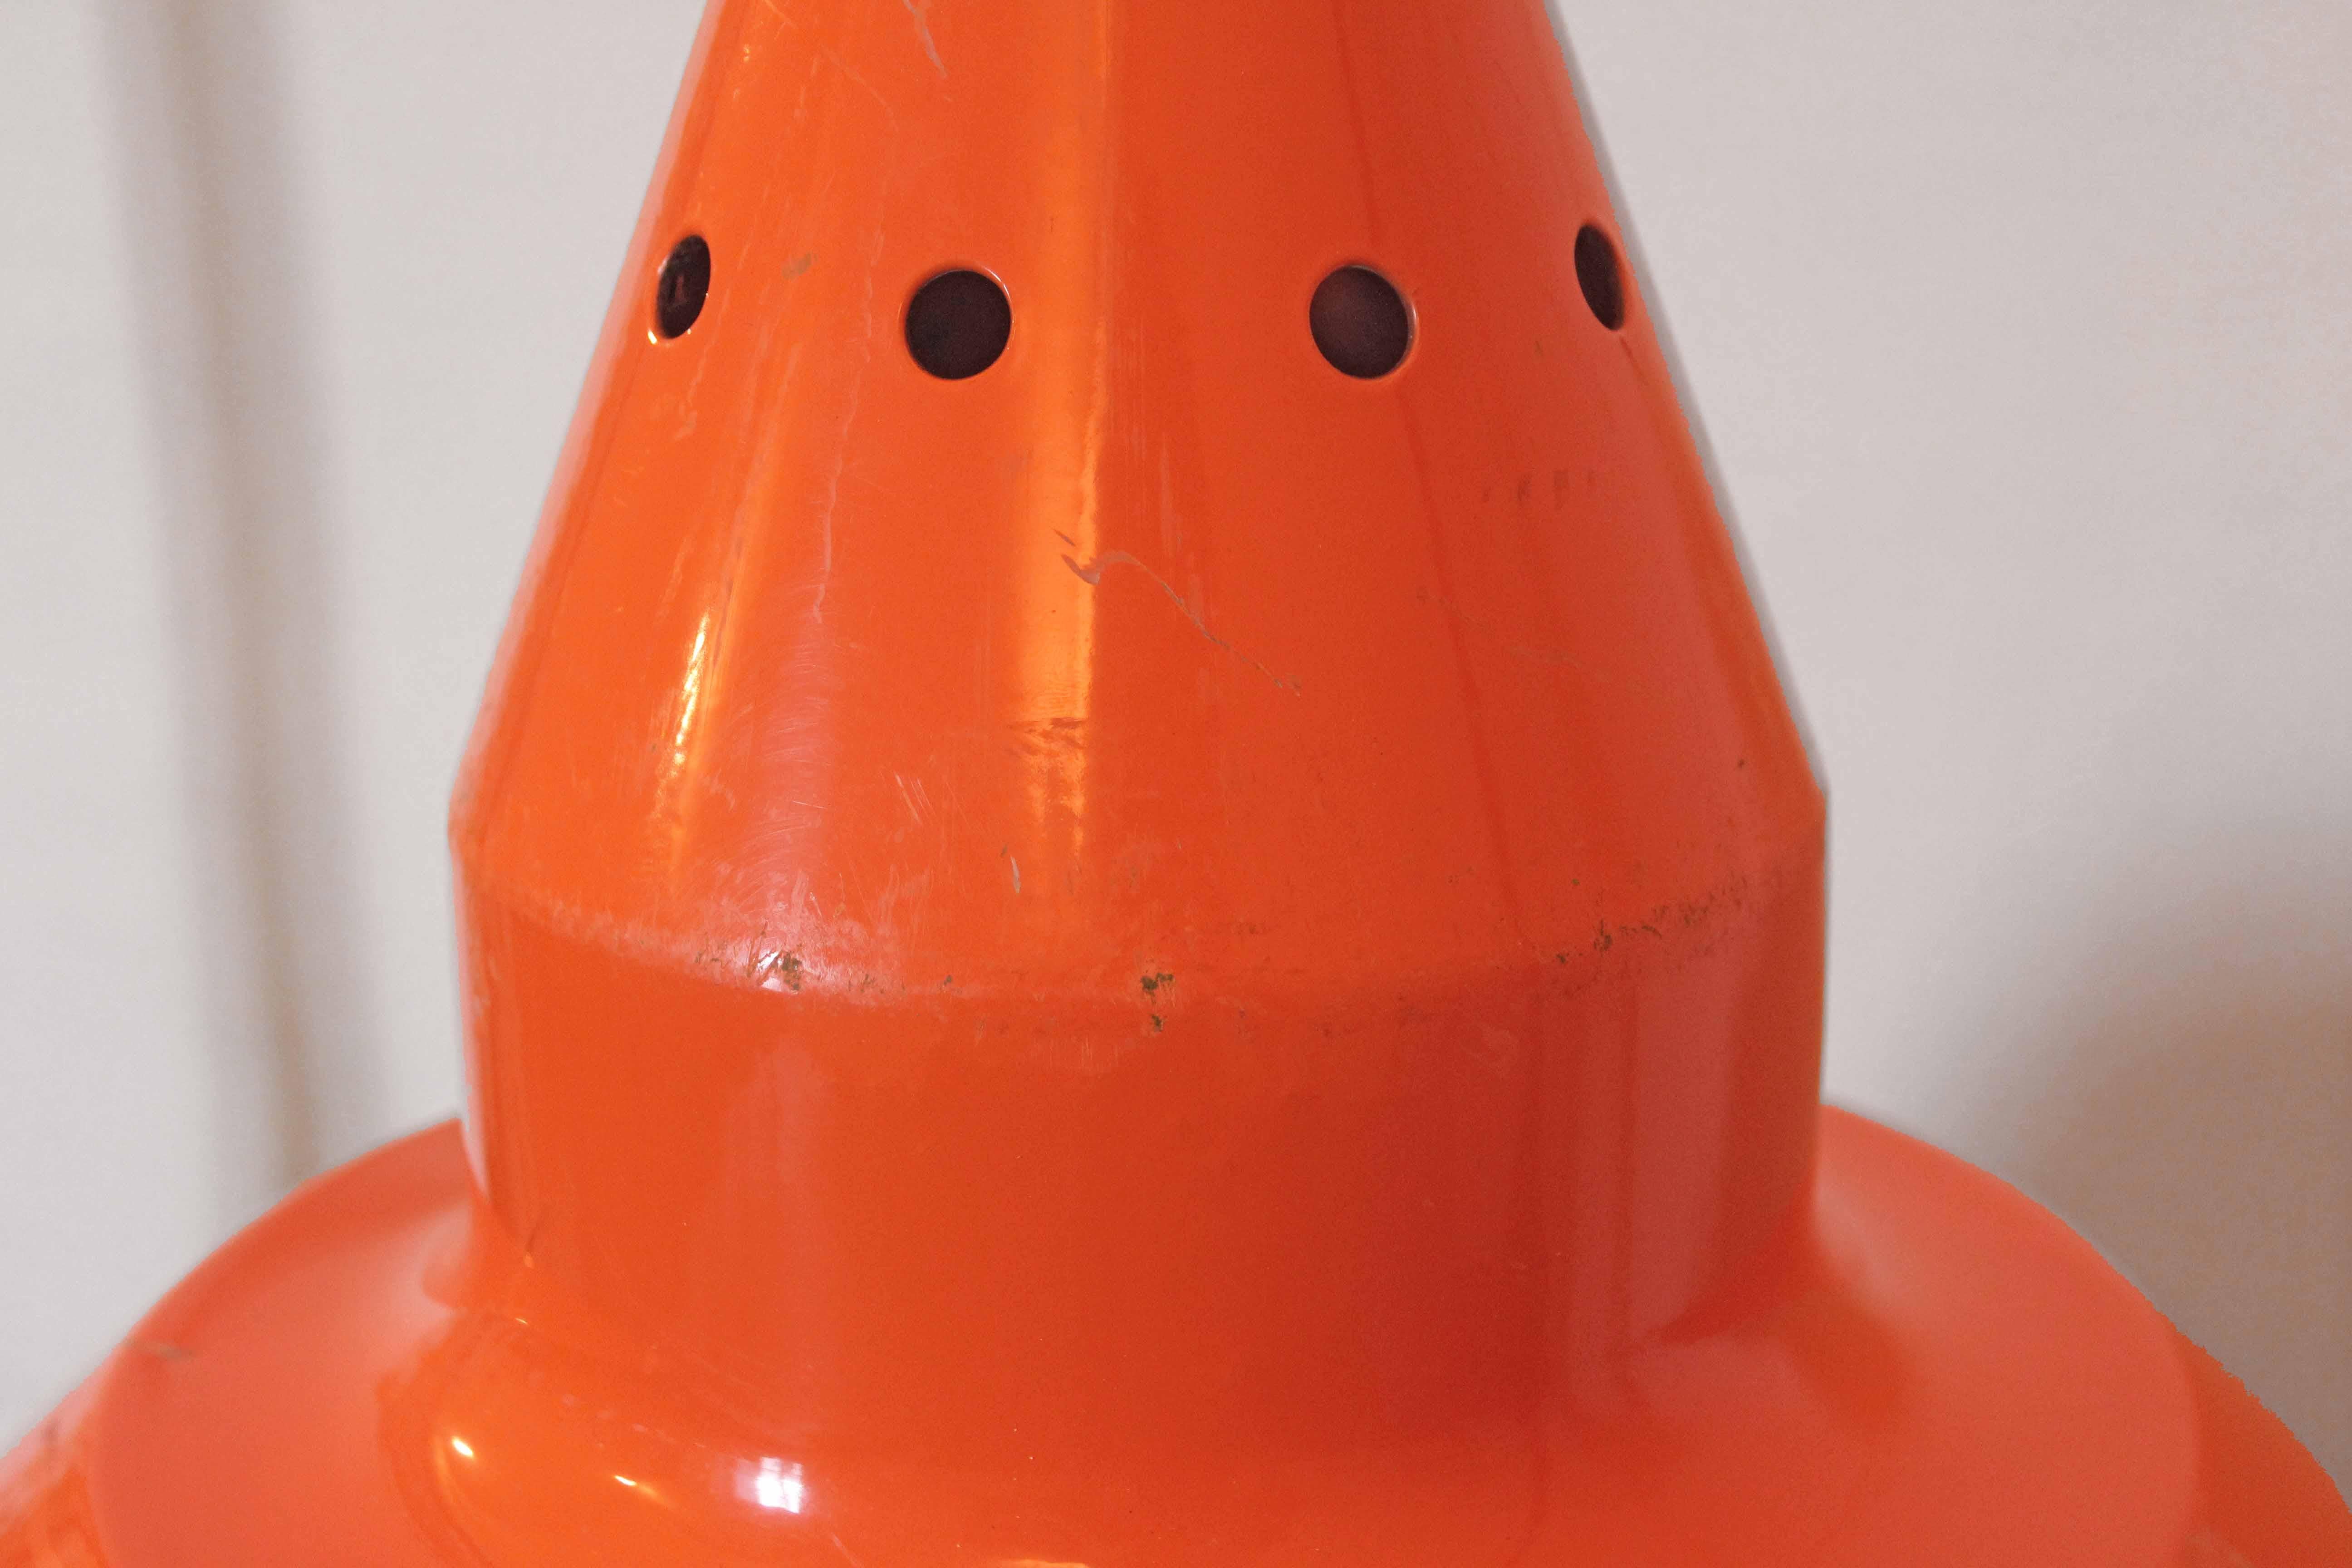 Orangefarbene Industrielampe, Italien 1970er Jahre.
Großer industrieller orangefarbener Lampenschirm aus den 1970er Jahren. Vintage Design. In sehr gutem Zustand mit nur wenigen Spuren der Zeit. 3 verfügbar.